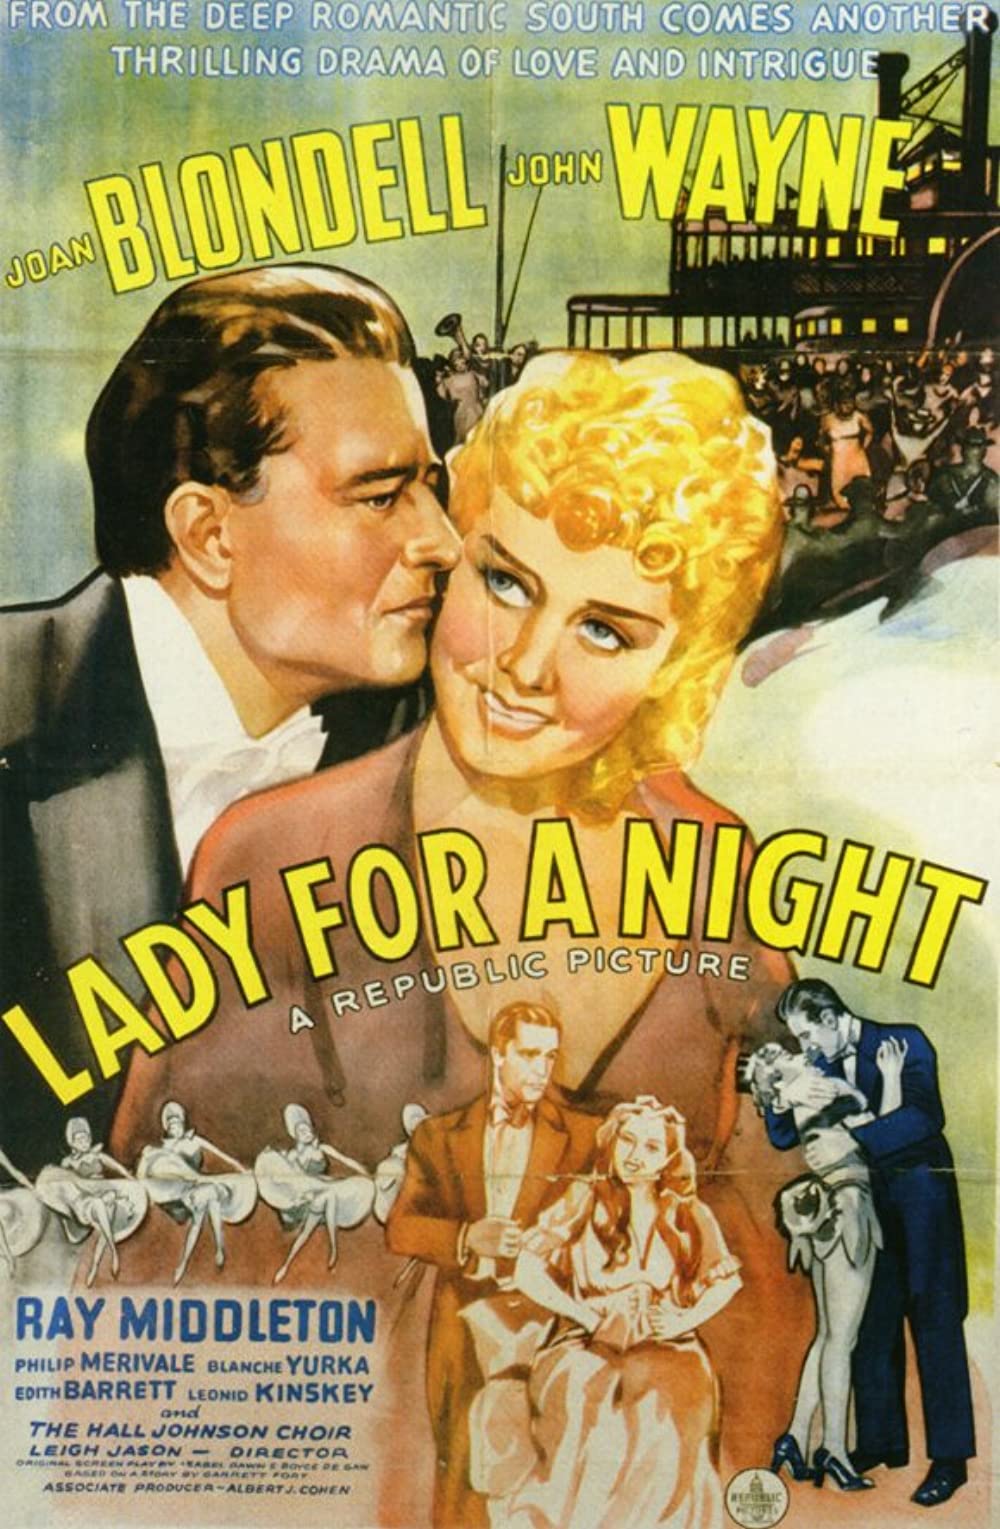 ดูหนังออนไลน์ฟรี Lady for a Night (1942) เลดี้ ฟอร อะ ไนท์